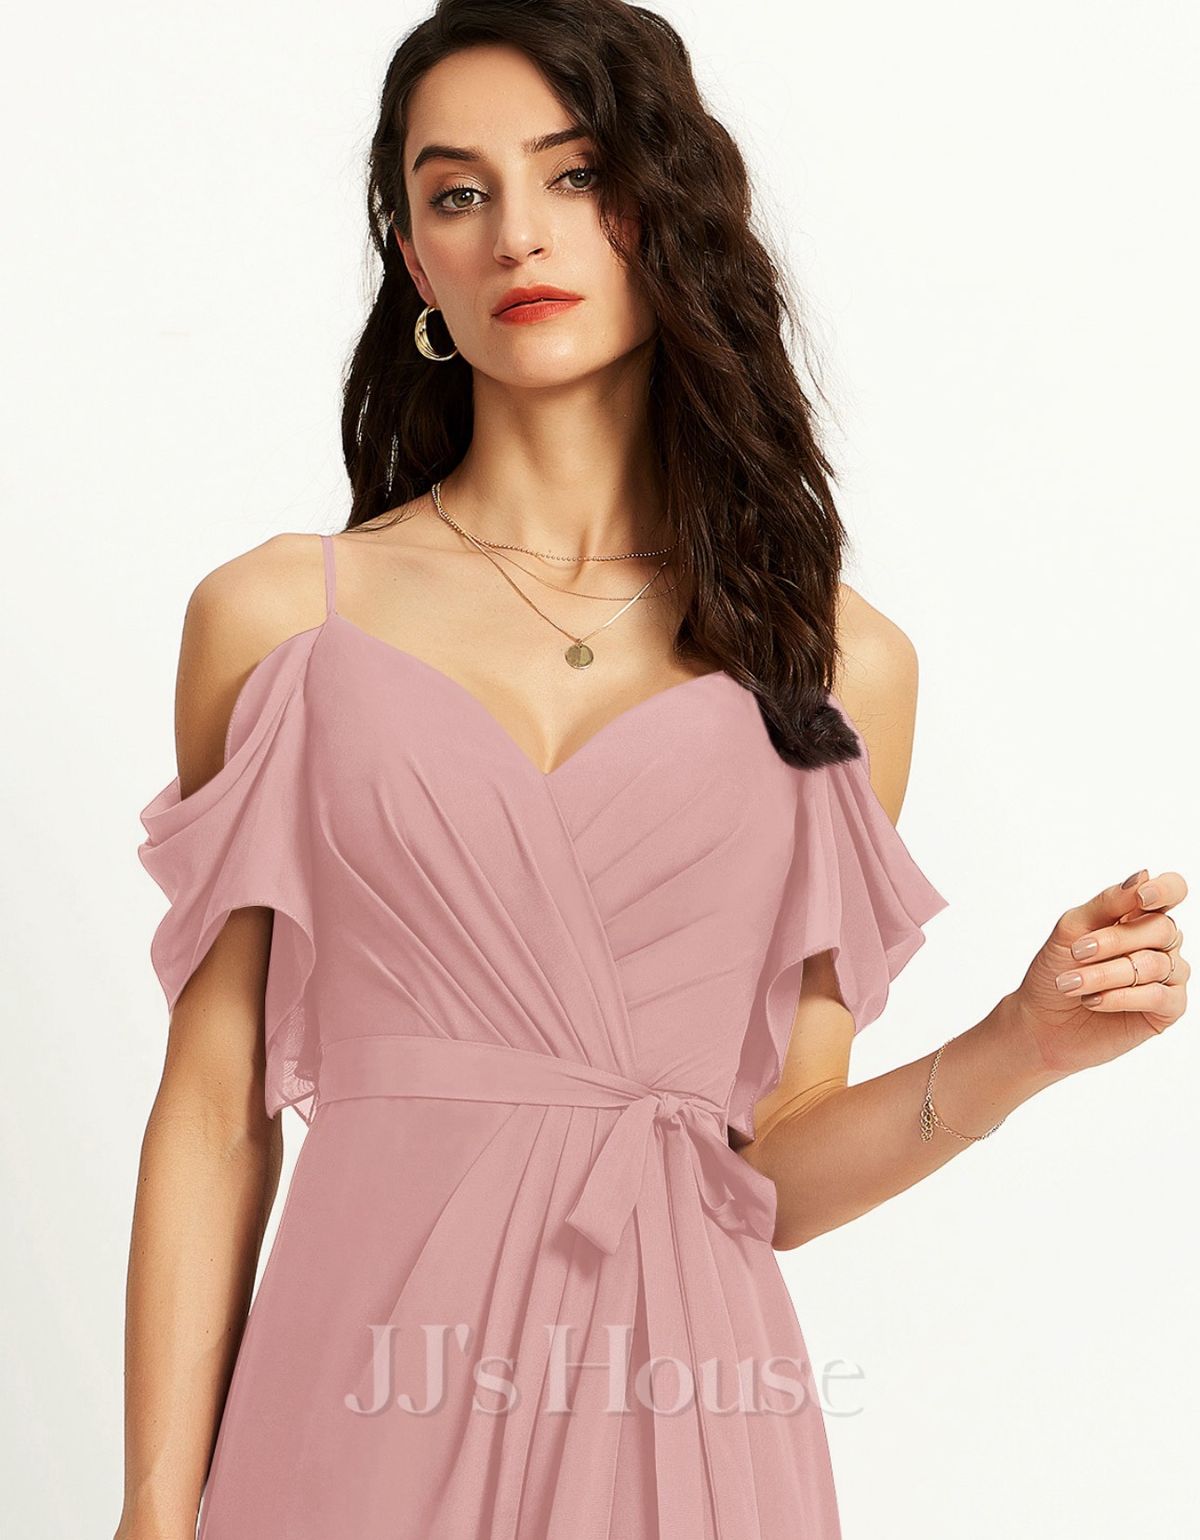 JJ House Size M Bridesmaid Off The Shoulder Pink Side Slit Dress on Queenly